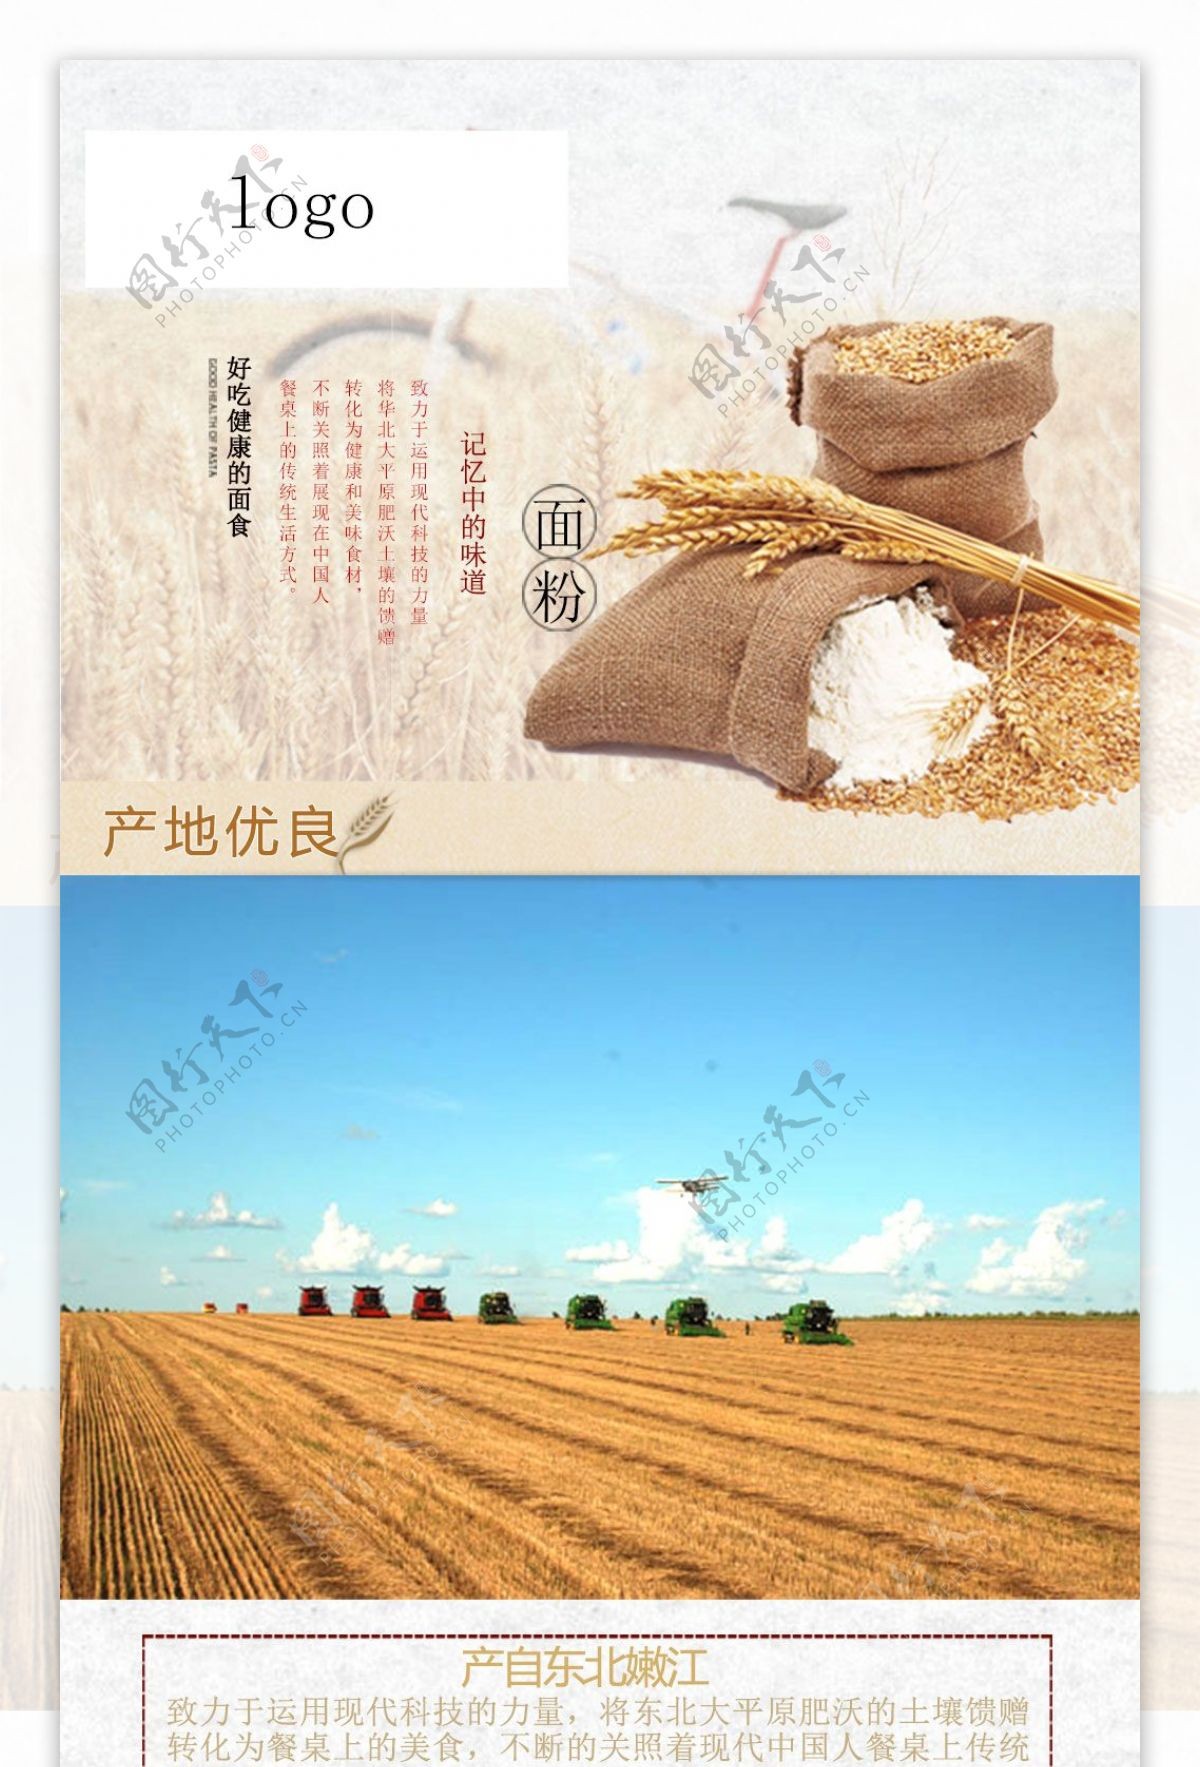 小麦制品详情页